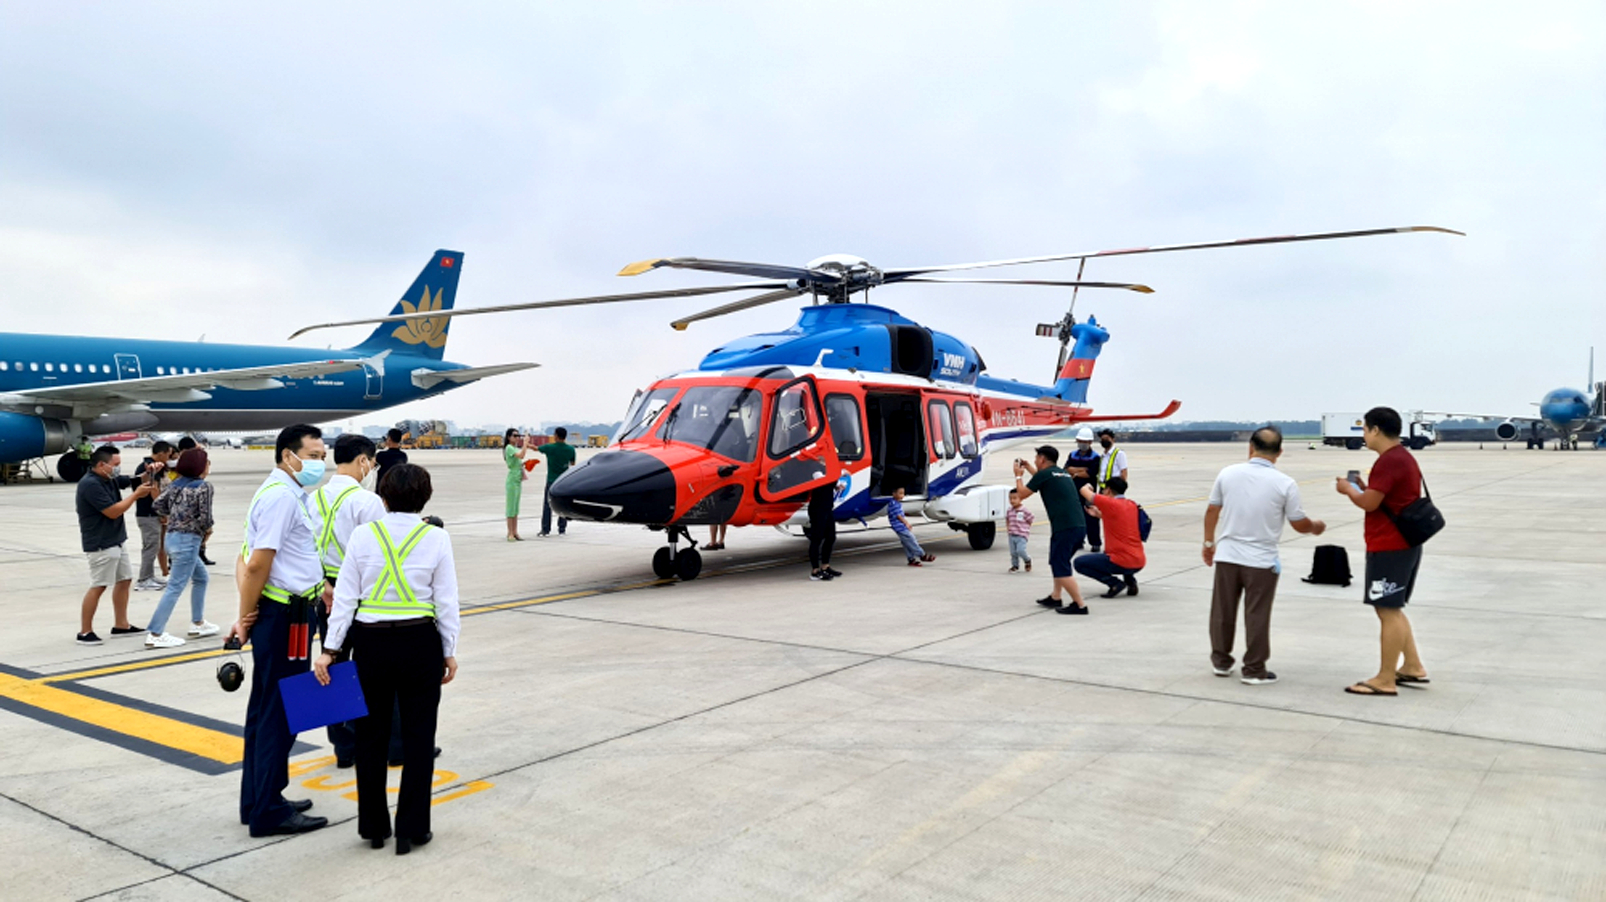 Tour ngắm thành phố từ trực thăng đang là sản phẩm du lịch có sức hút nhất đối với du khách đến TP.HCM - ẢNH: Q.THÁI